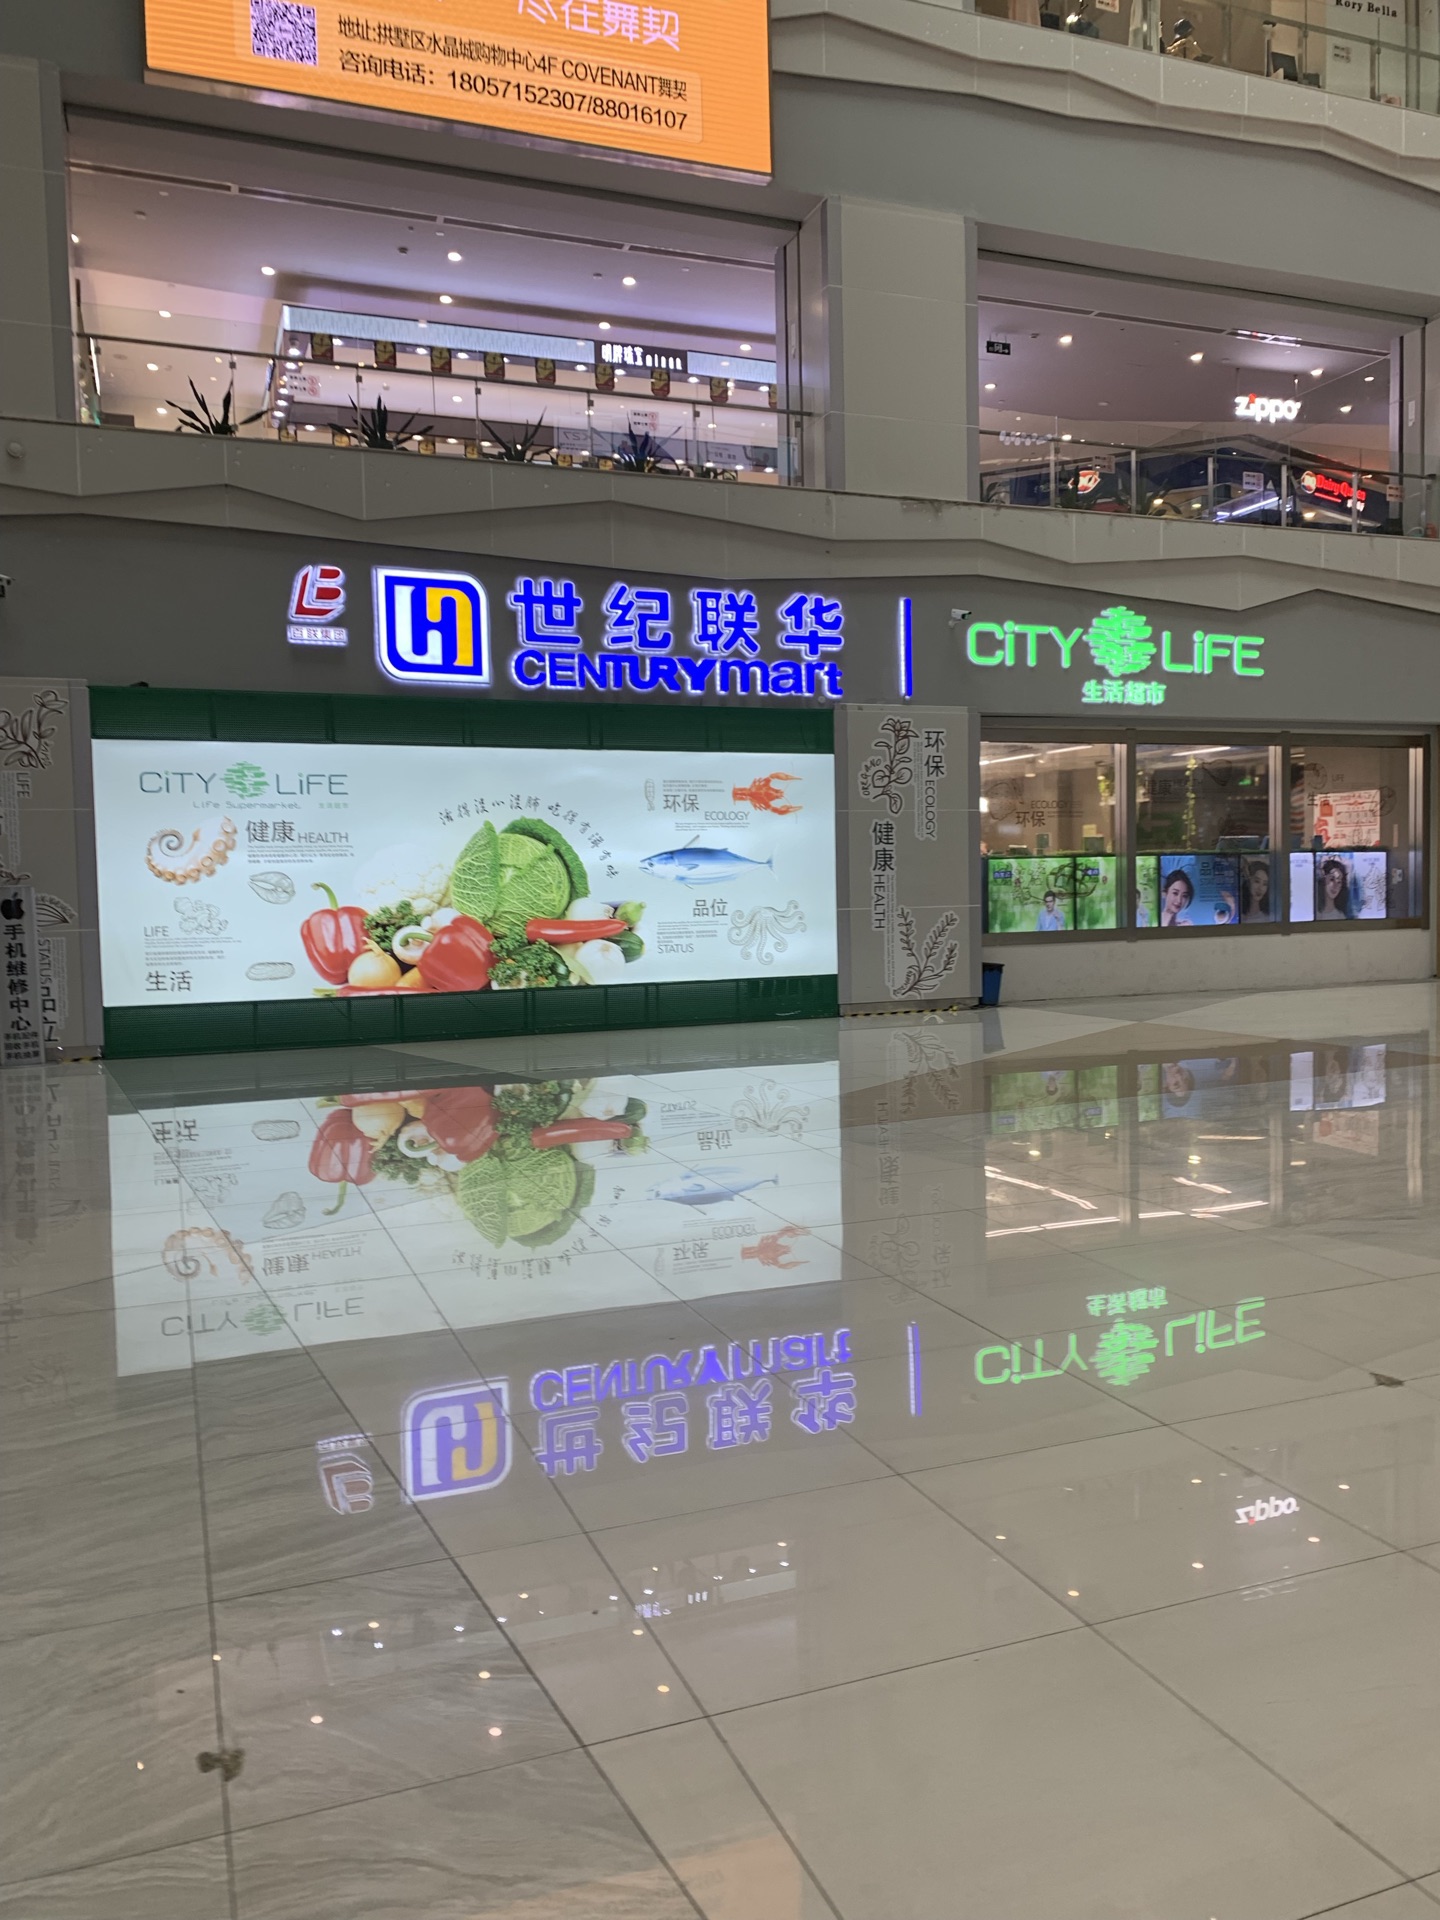 【携程攻略】杭州世纪联华超市(学院路)购物,这家世纪联华算是比较好